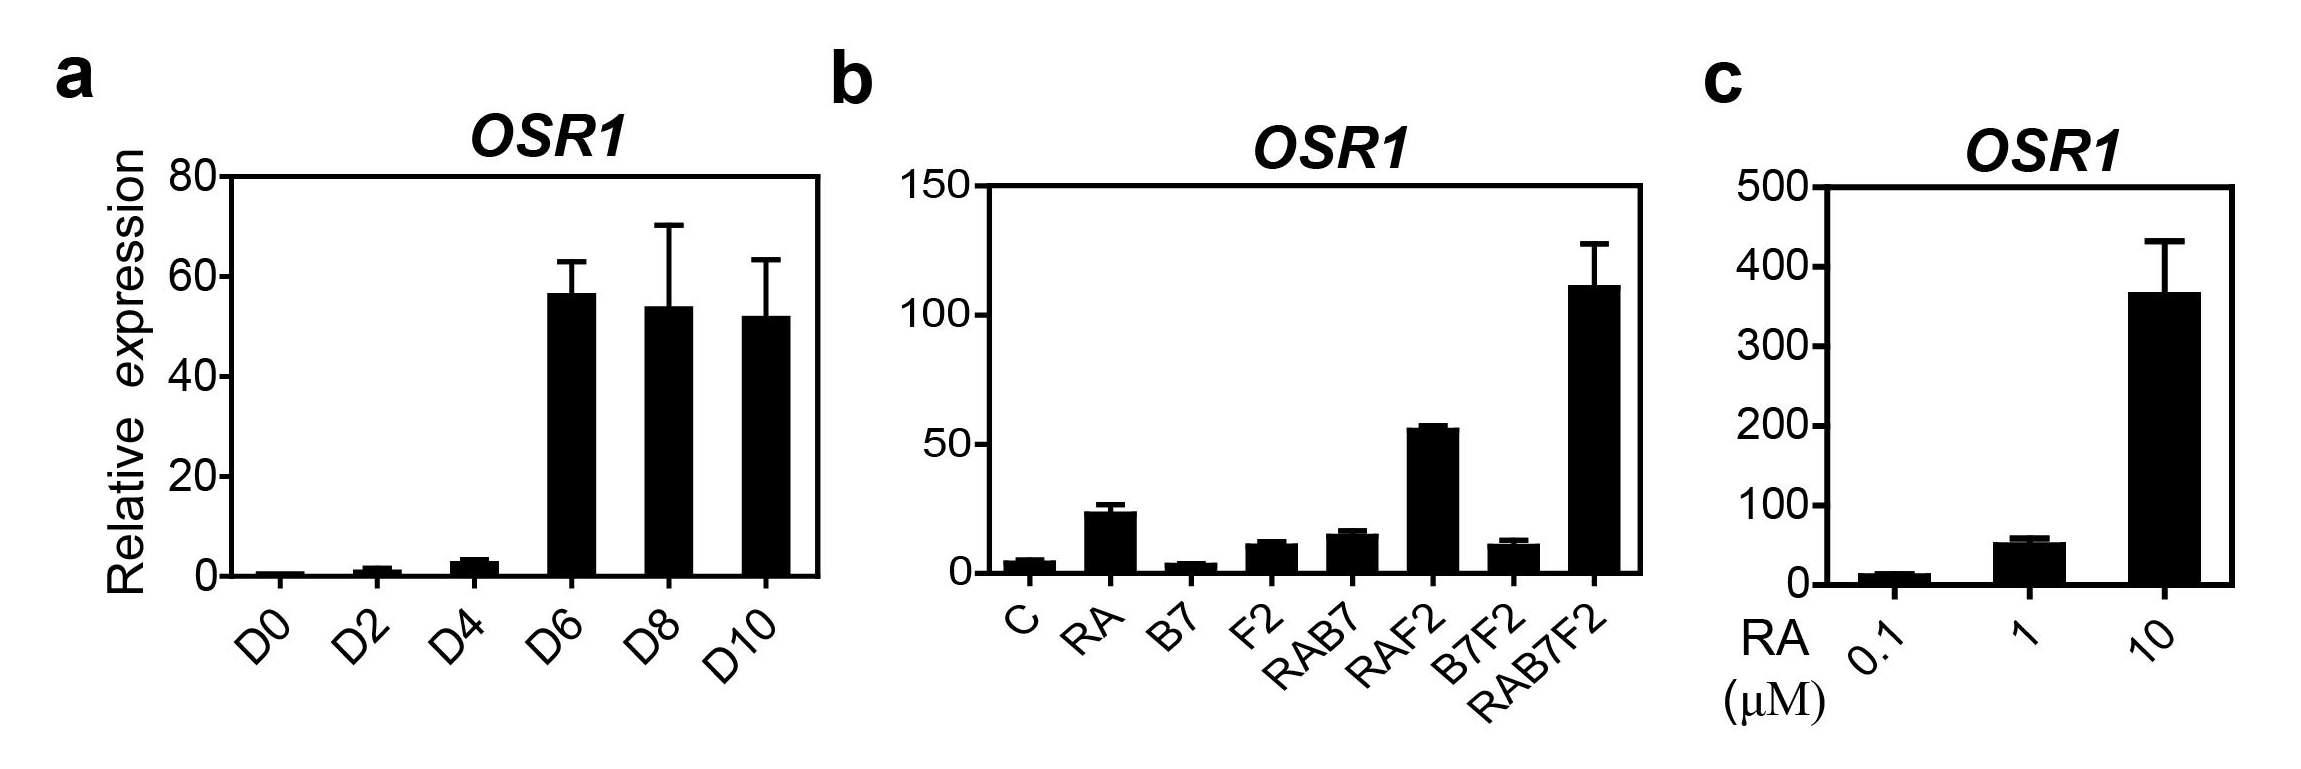 인간 배아 줄기세포 유래의 중간 중배엽 세포에서 특이마커 유전자인 OSR1의 다양한 조건에서의 발현 결과